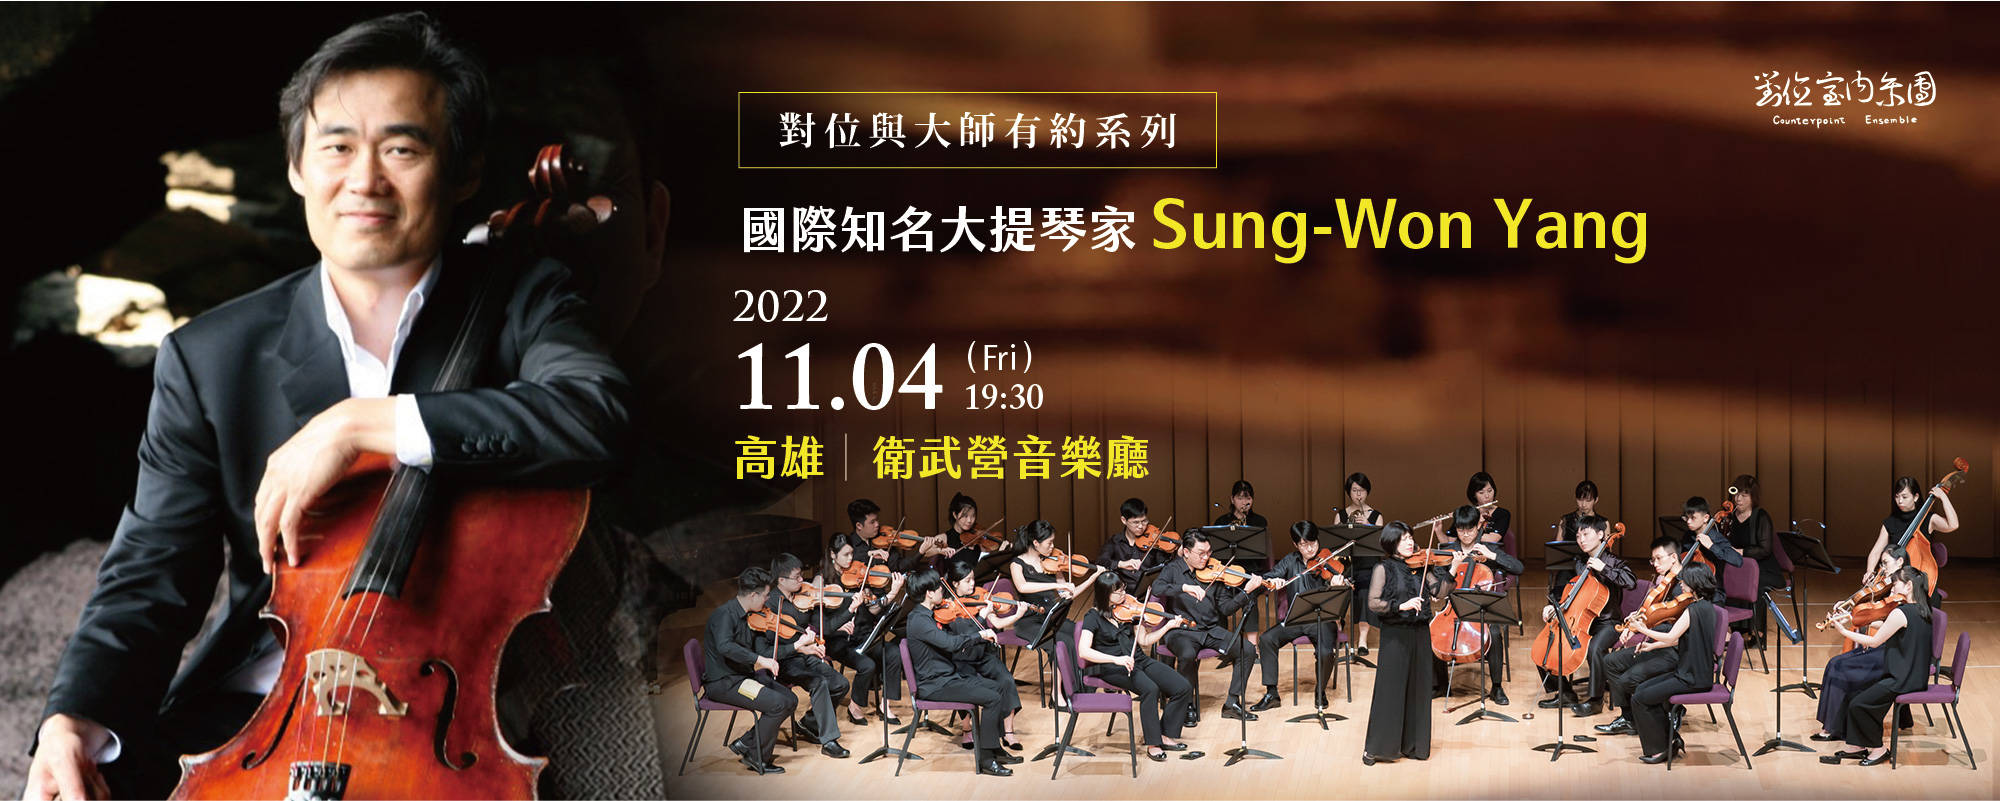 《對位與大師有約-VI 大提琴詩人Sung-Won Yang梁盛苑》